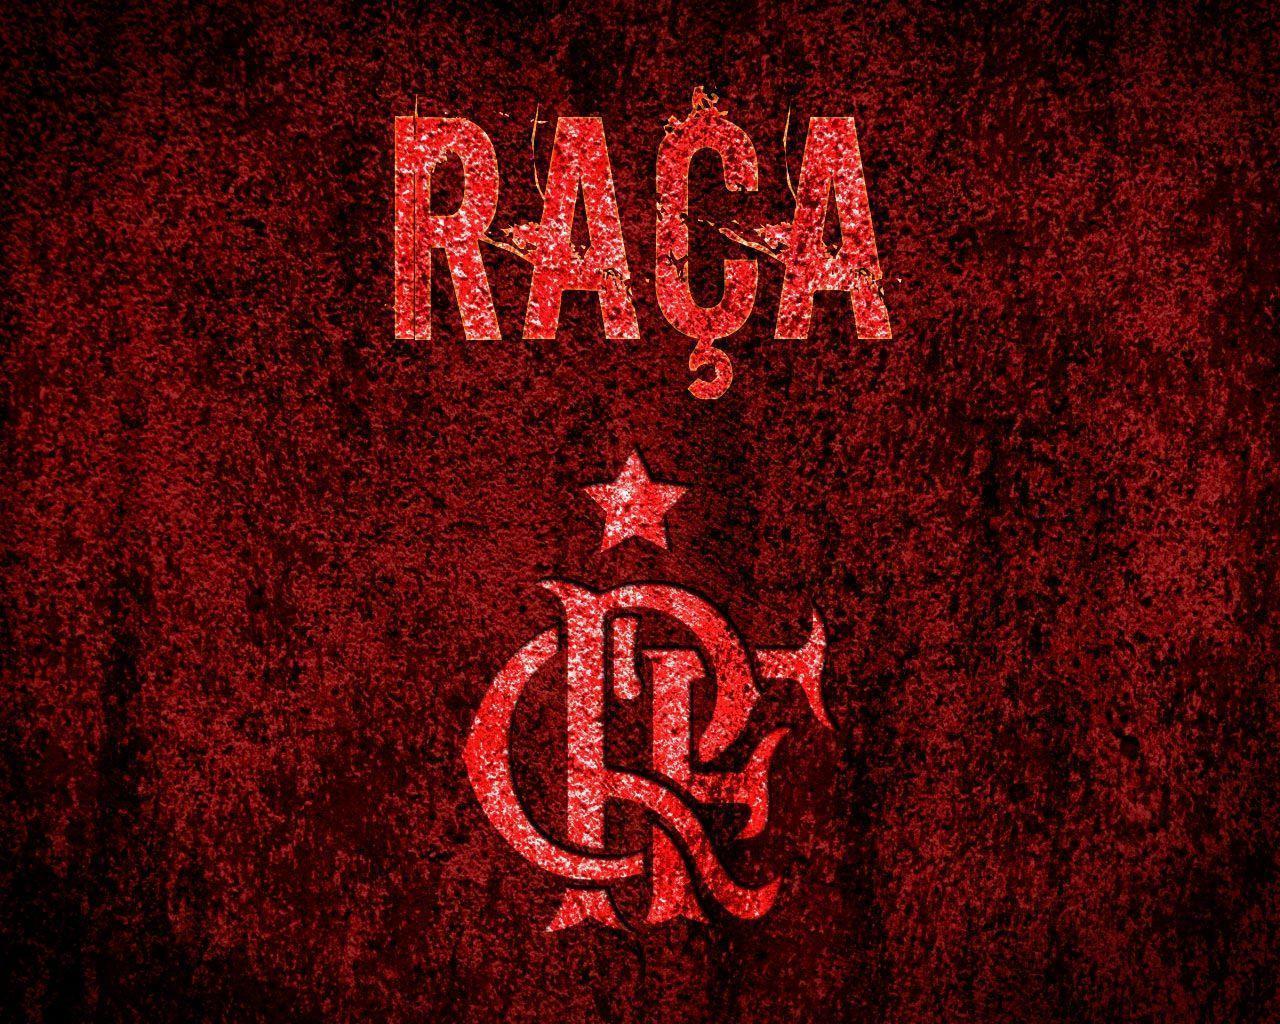 Fla Tocantins: Wallpaper Flamengo